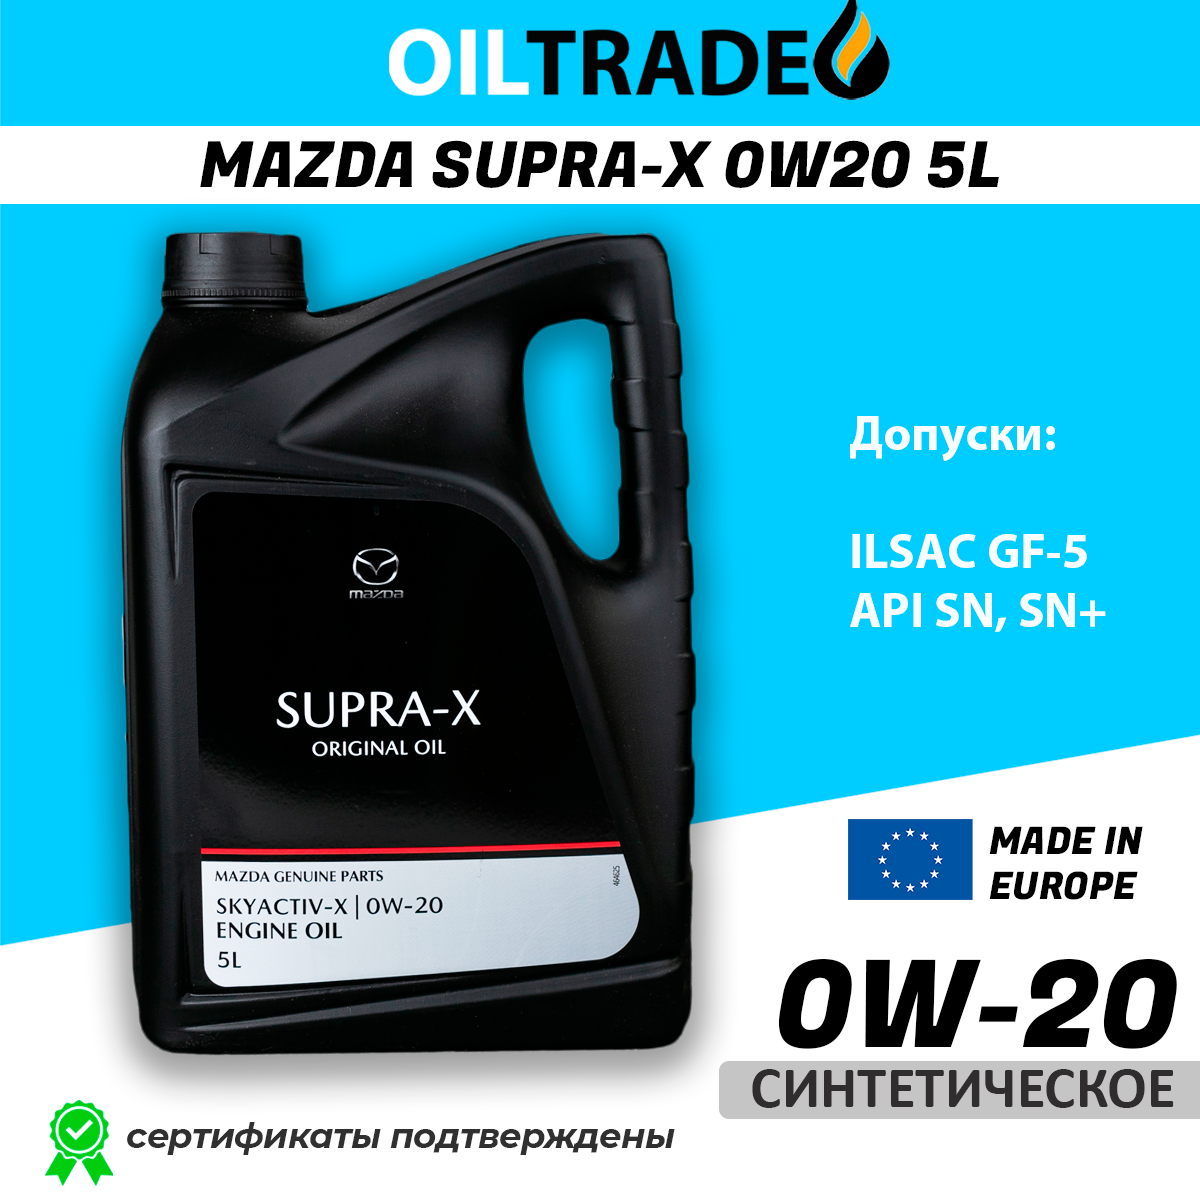 Моторное масло Mazda Original Oil Supra-X 0w20 синтетика 5л оригинал 830077153